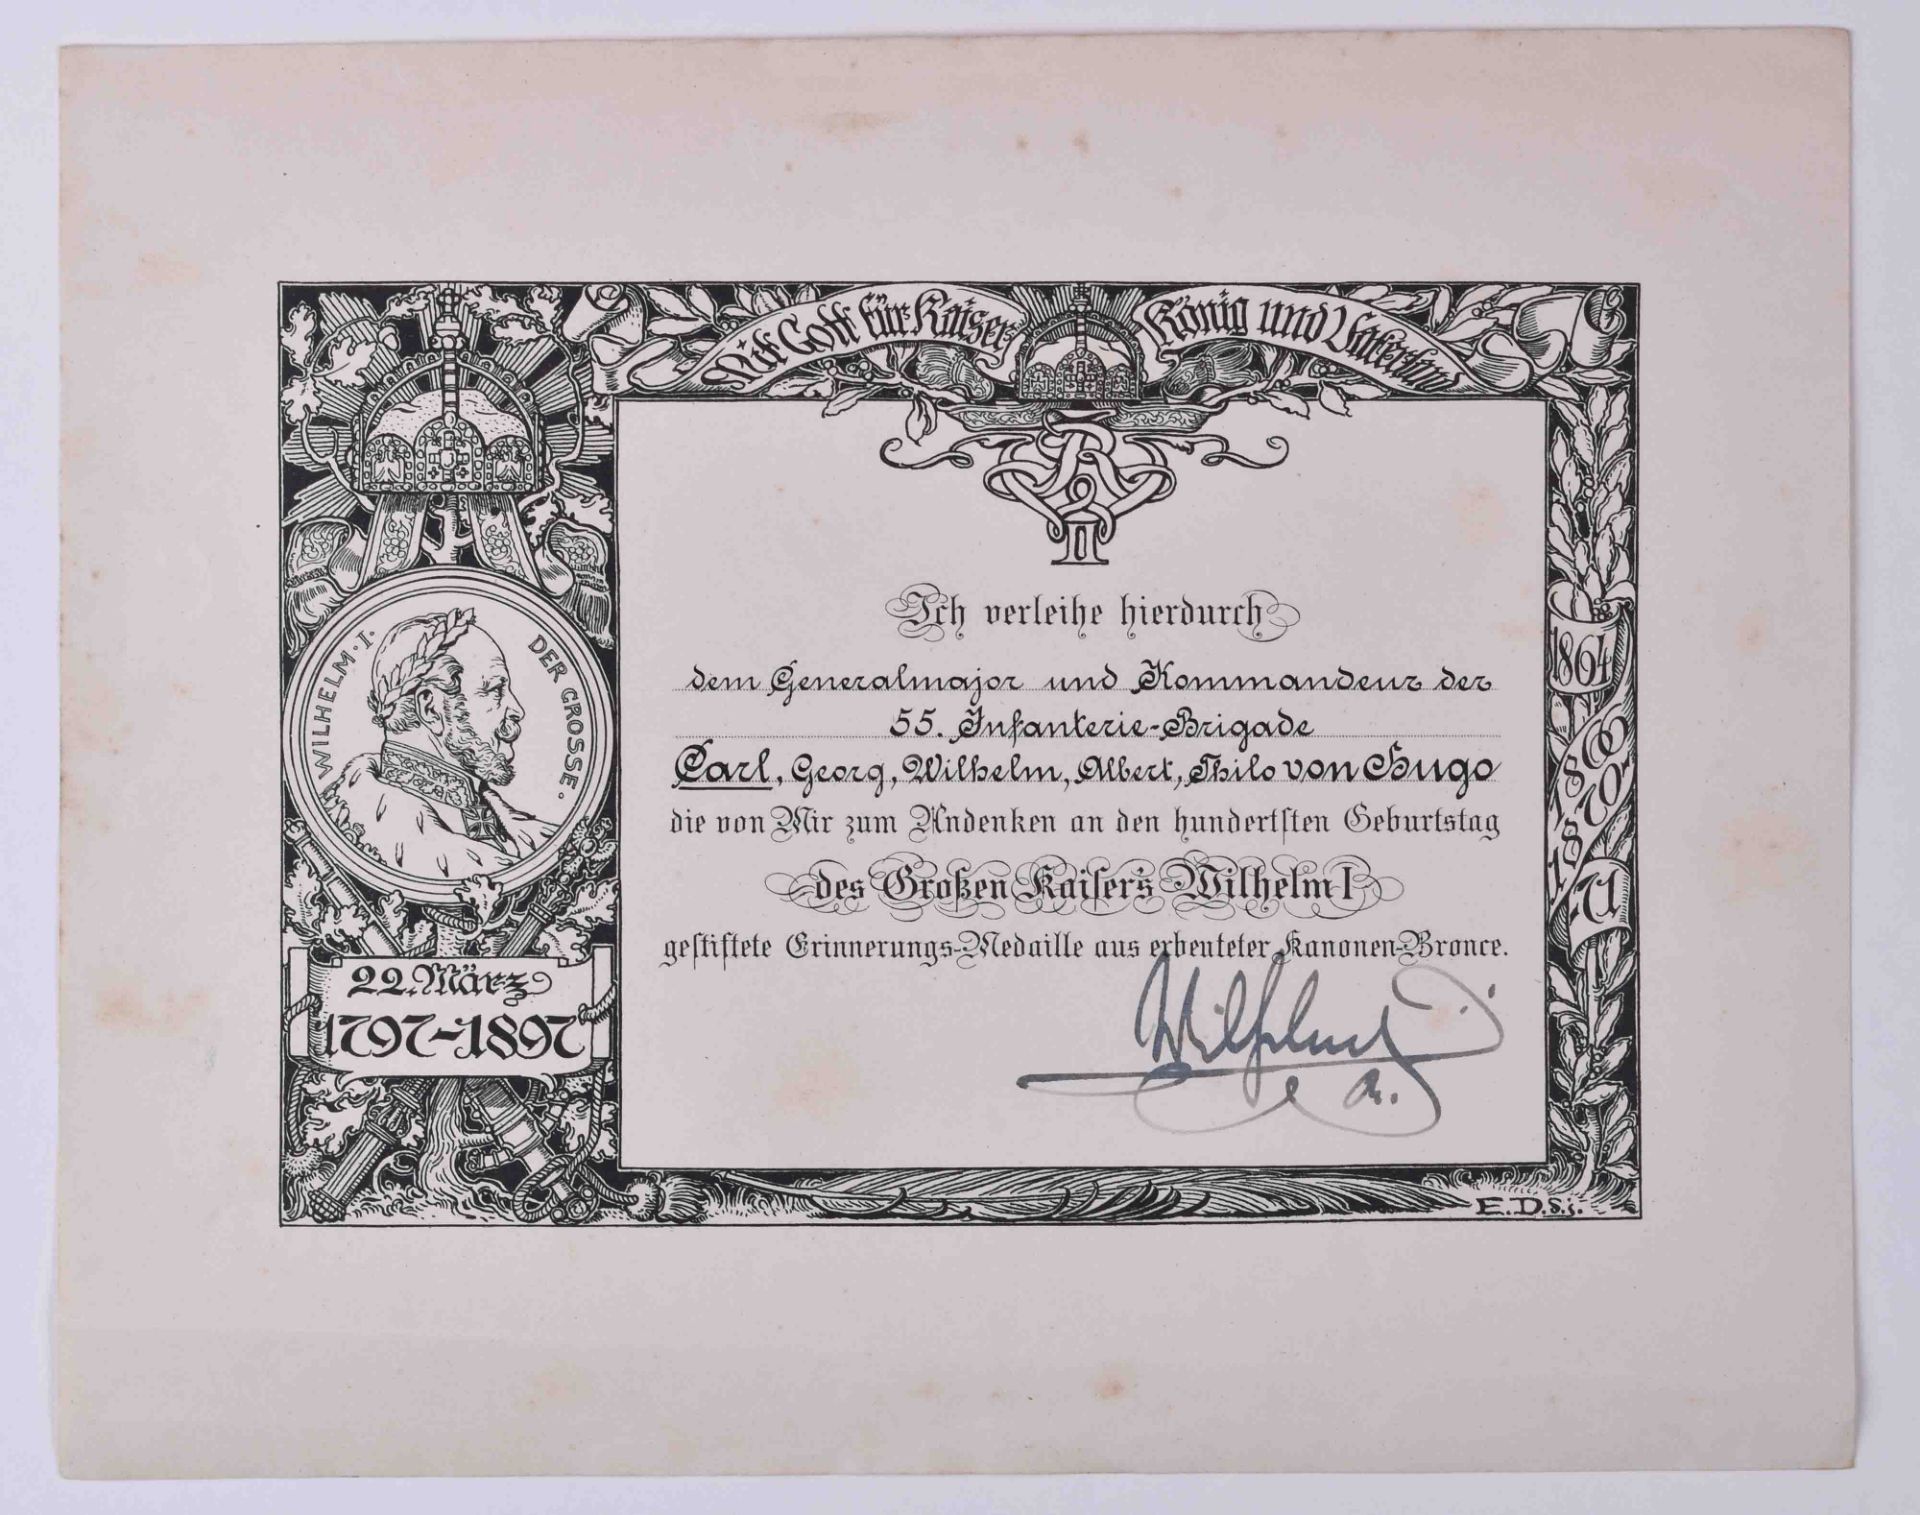 Verleihungsurkunde Erinnerungsmedaille 22.3.1897Verleihungsurkunde zur Erinnerungsmedaille zum